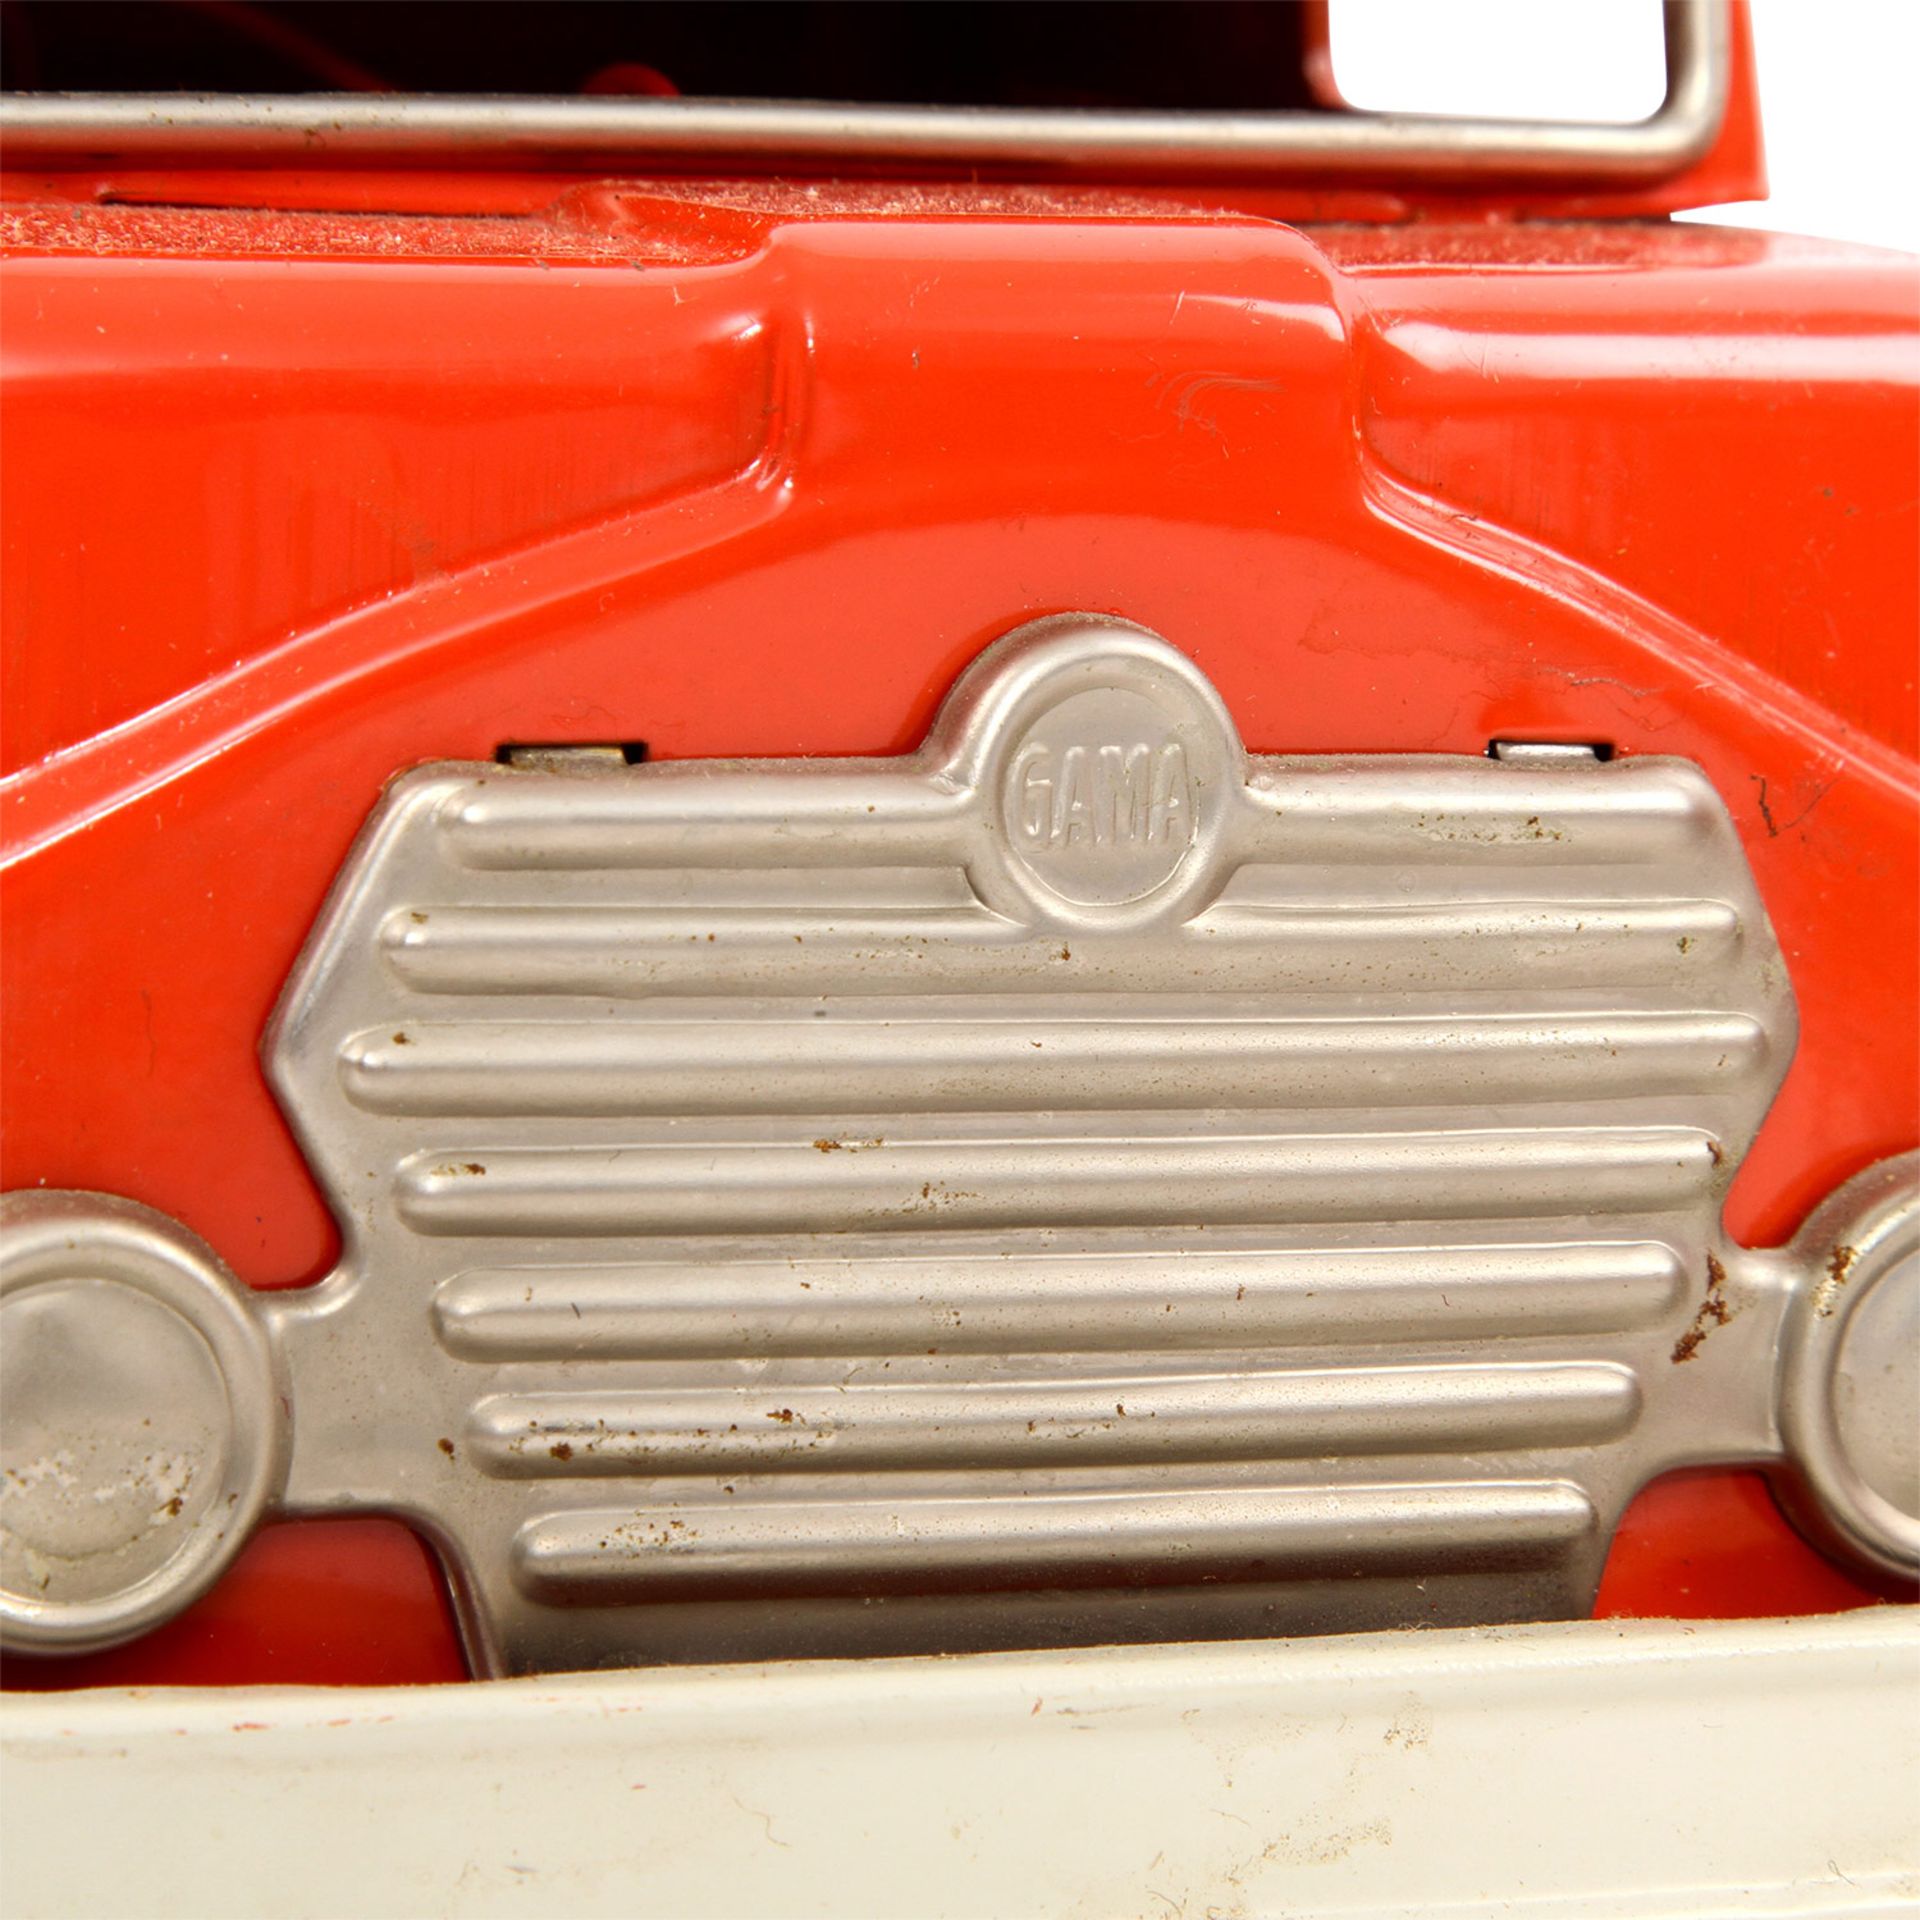 GAMA Feuerwehrfahrzeug 2622, 1950er/60er Jahre, gemarkt, Blech u. Kunststoff, gummibereift, - Bild 8 aus 9